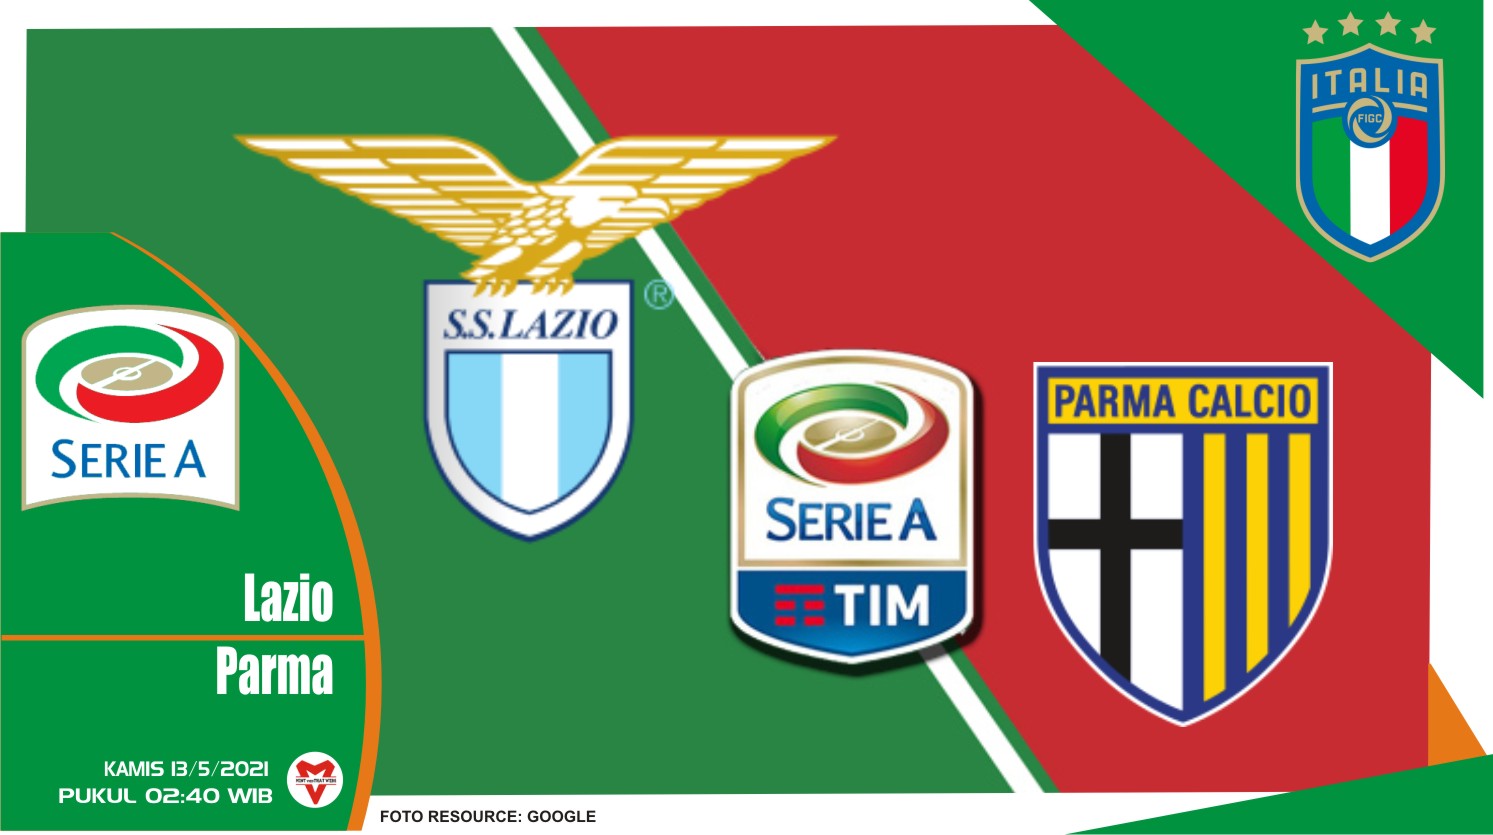 Prediksi Liga Italia: Lazio vs Parma - 13 Mei 2021